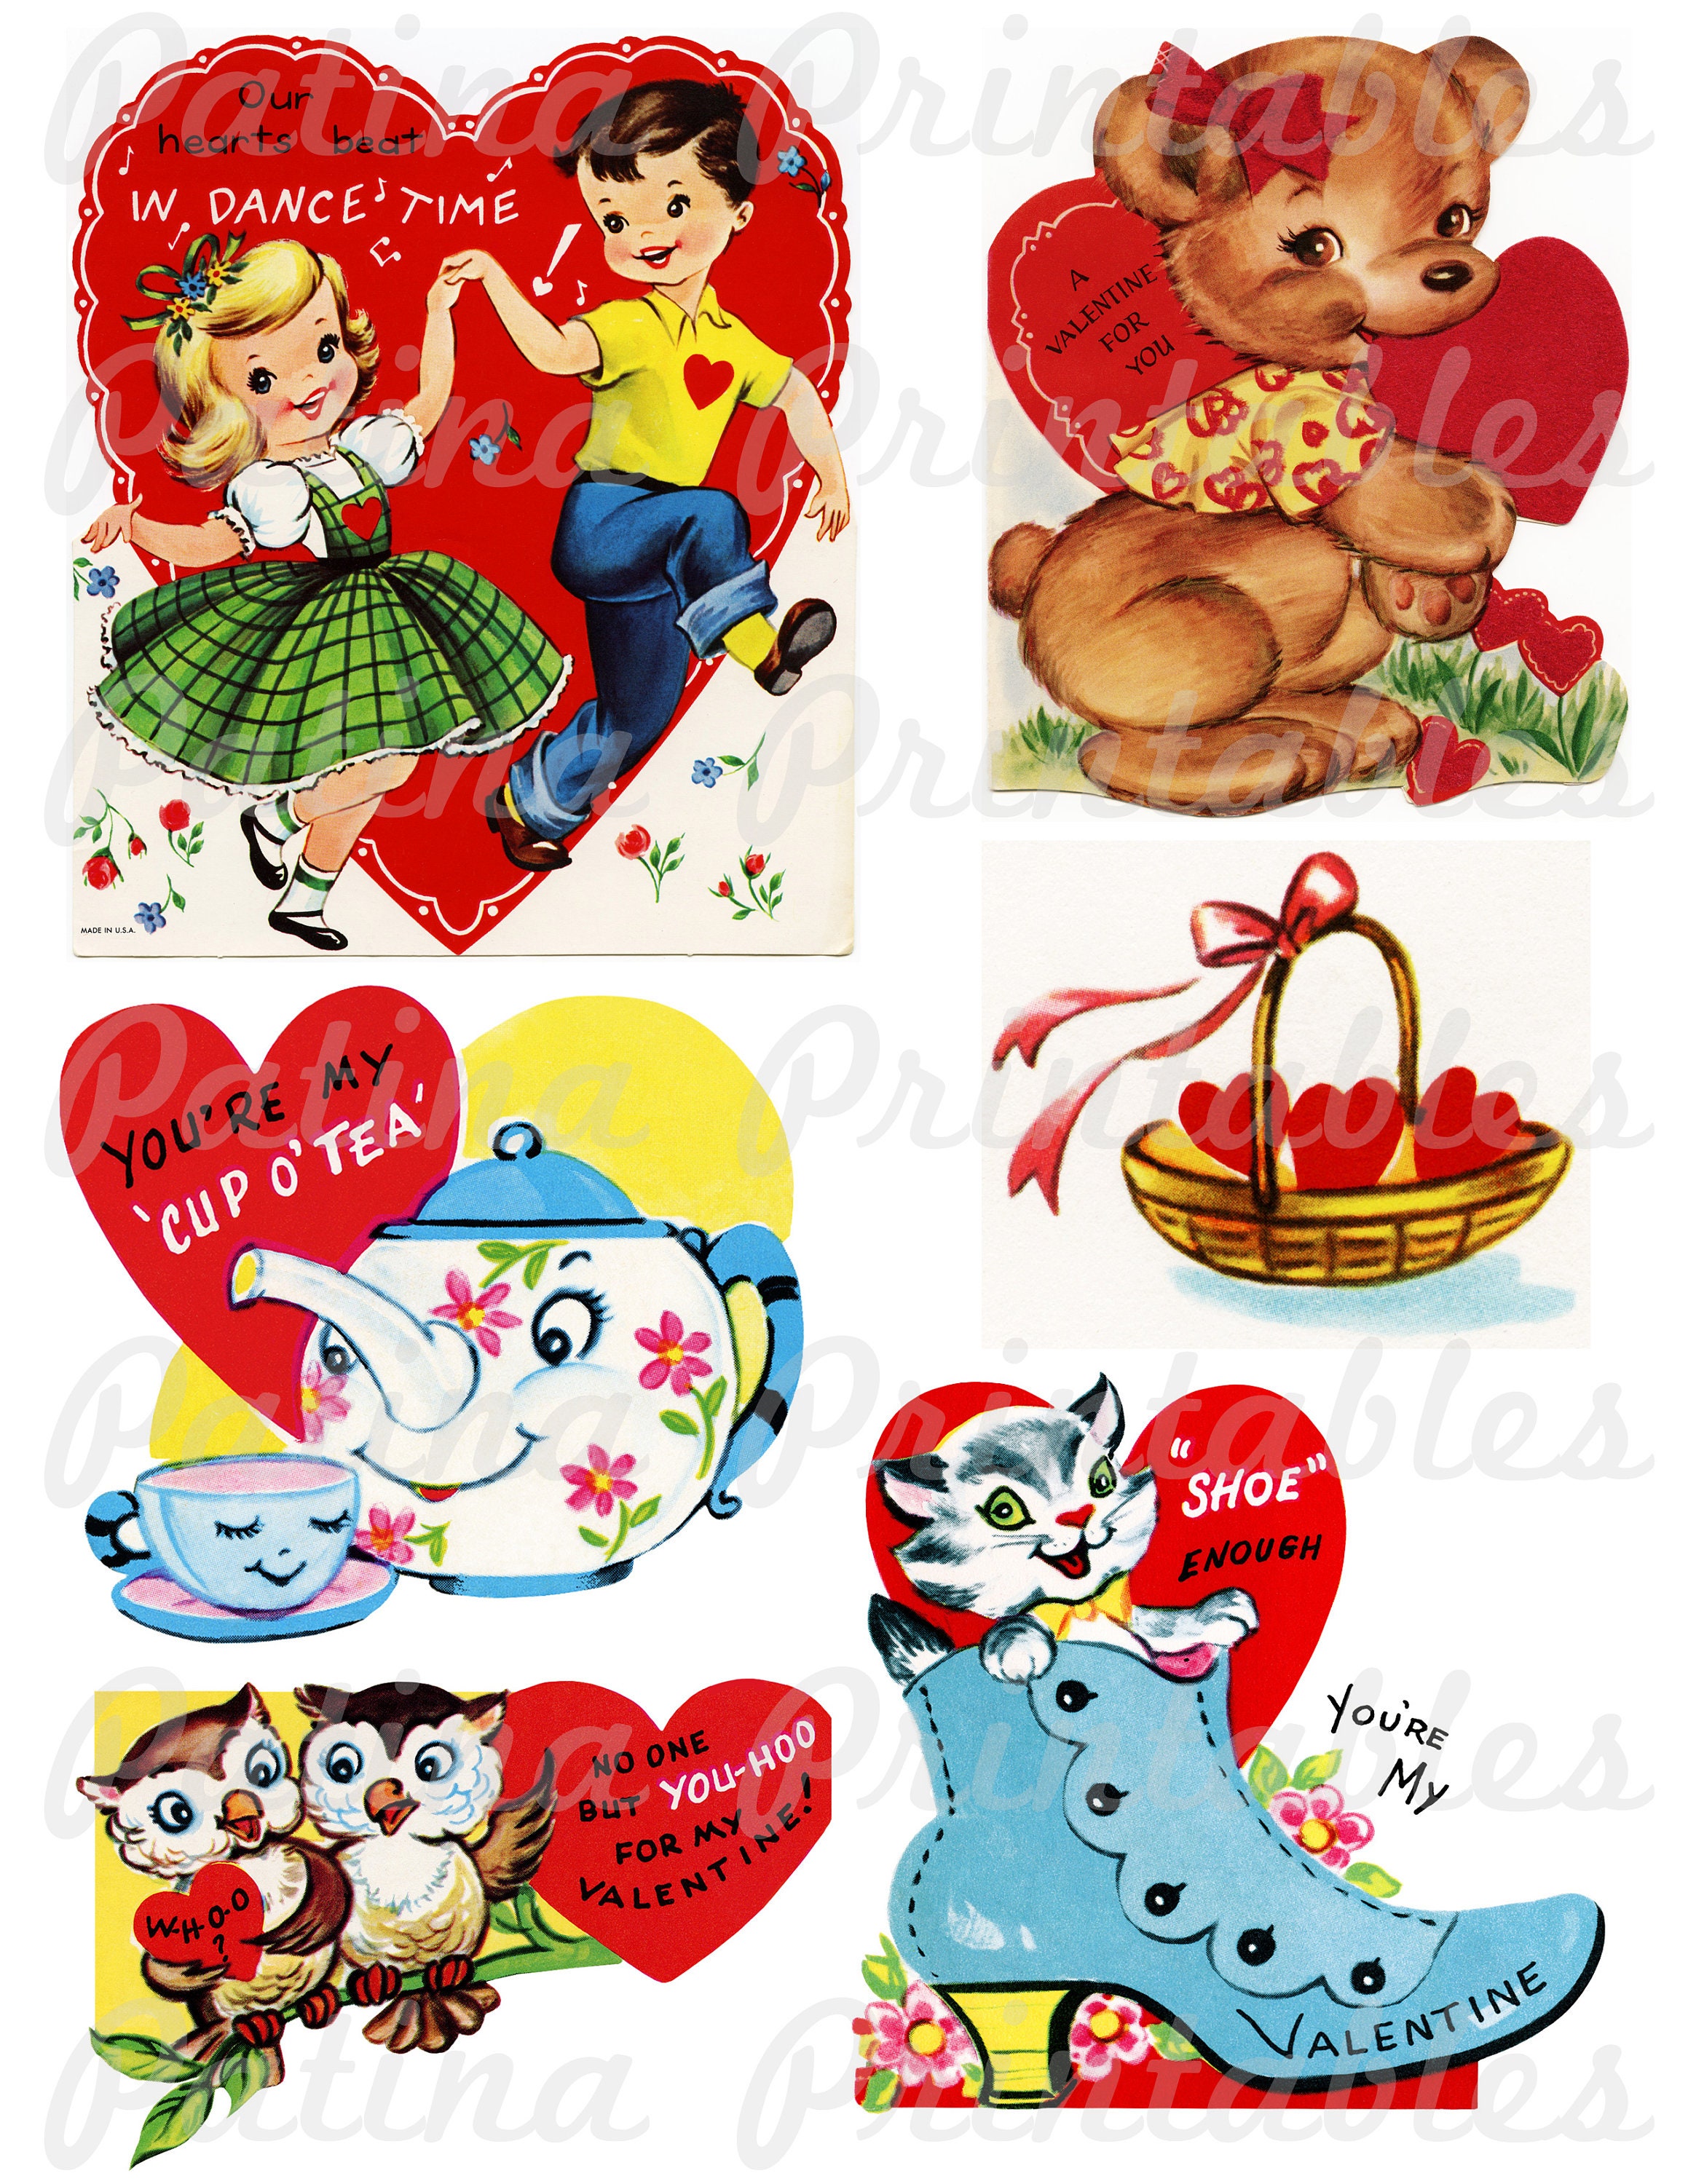 Vintage Valentine Cards Printable — For Keeps